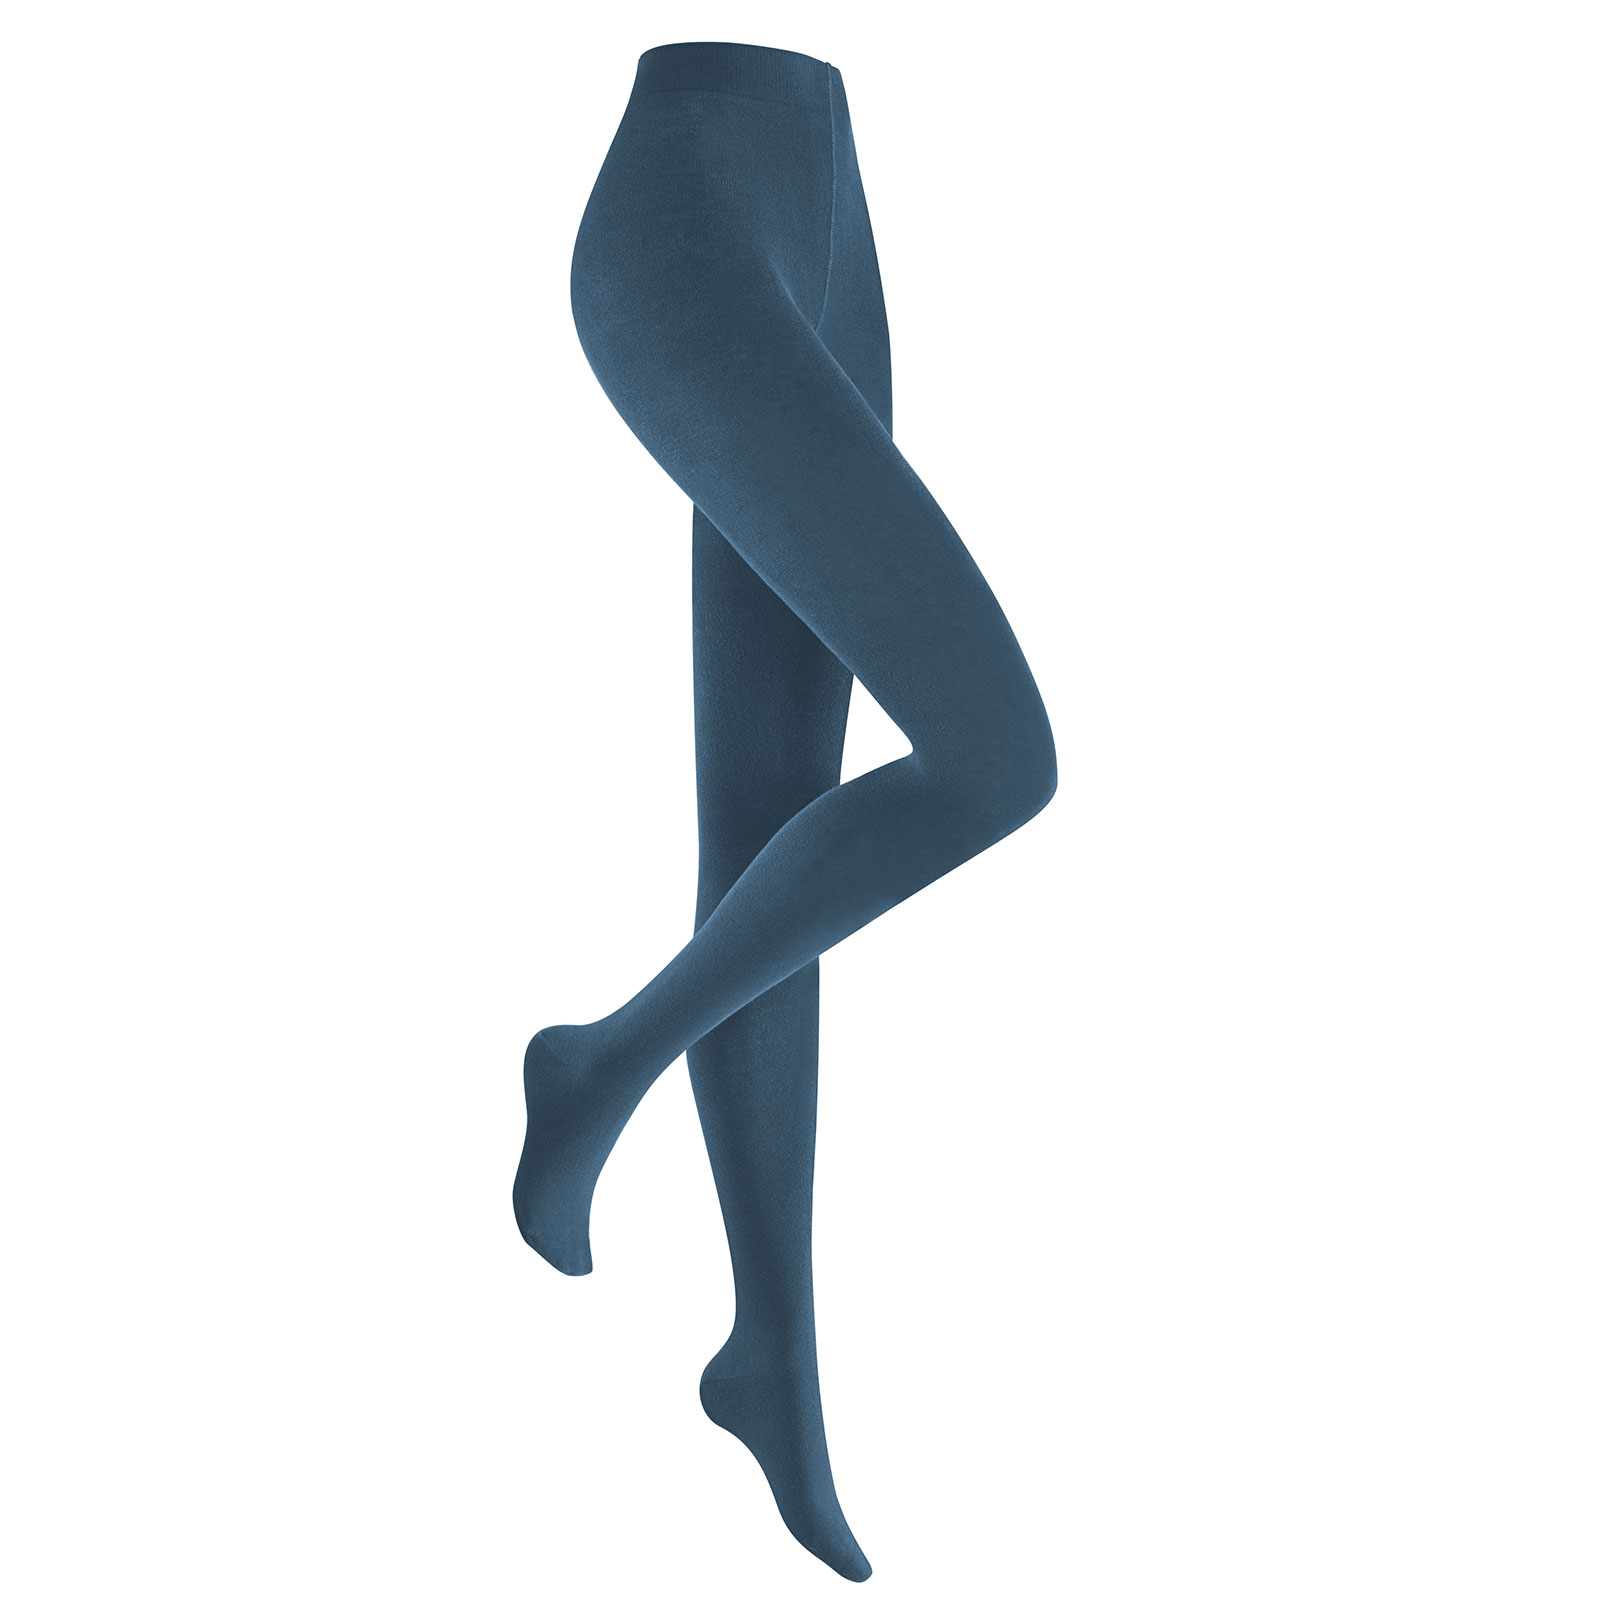 HUDSON Damen RELAX FINE  -  40/42 - Blickdichte Strumpfhose / Strickstrumpfhose mit hohem Baumwollanteil - Blue moon (Blau)